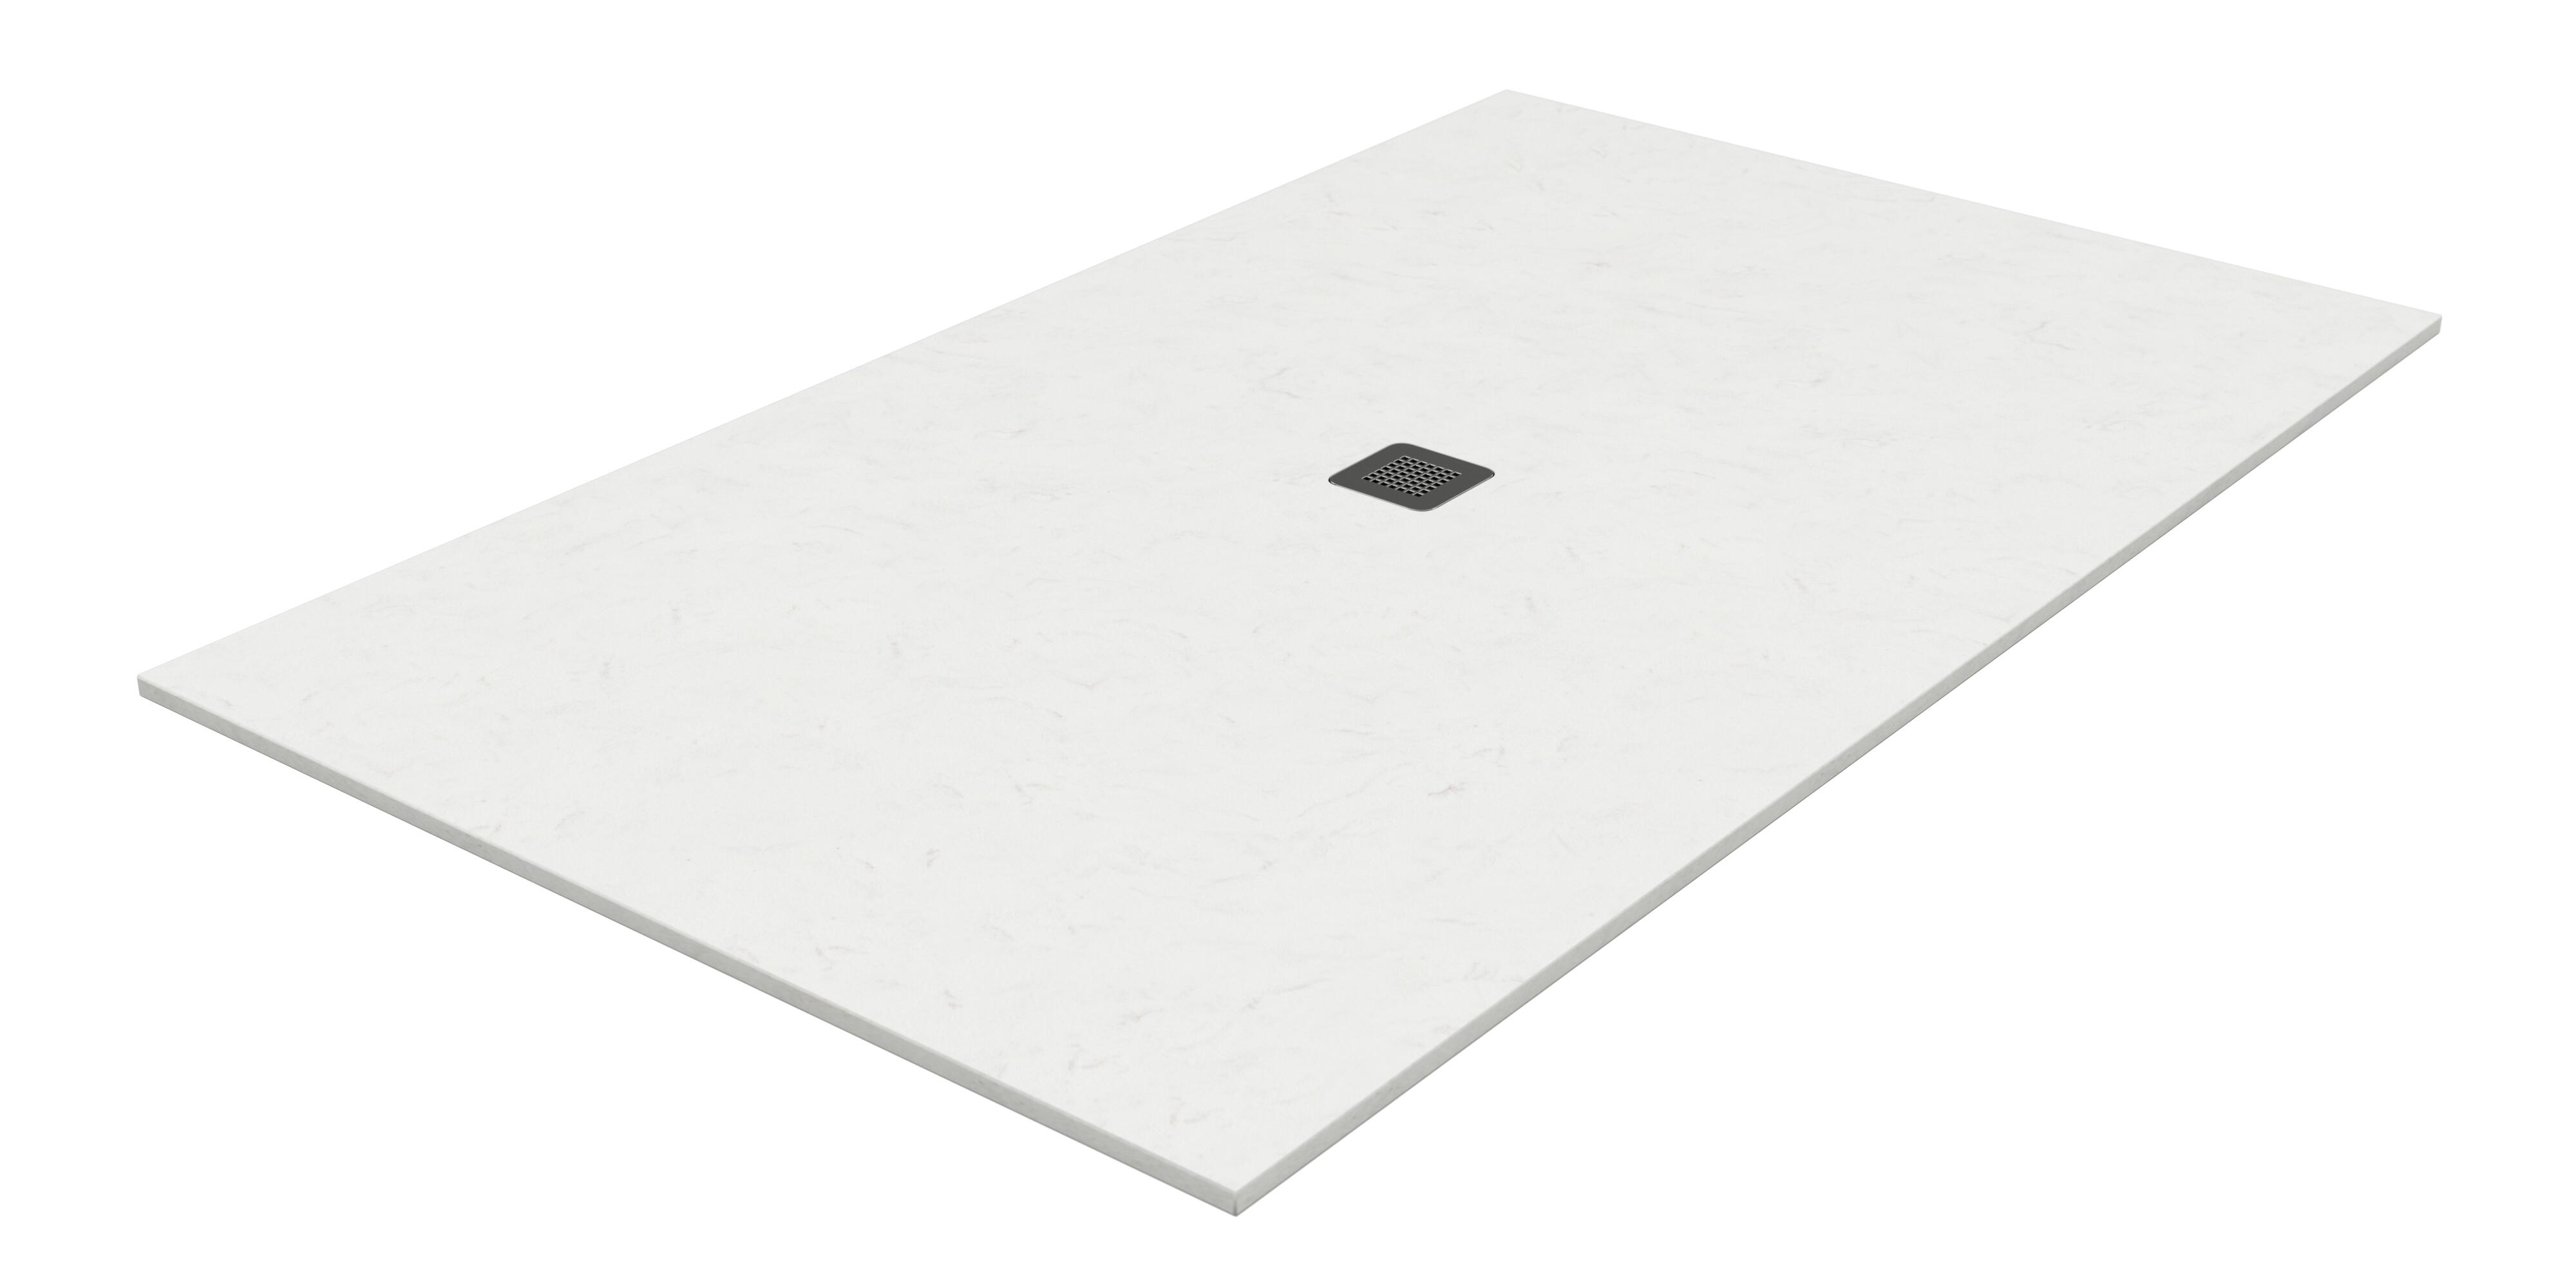 Plato de ducha kioto 170x90 cm blanco